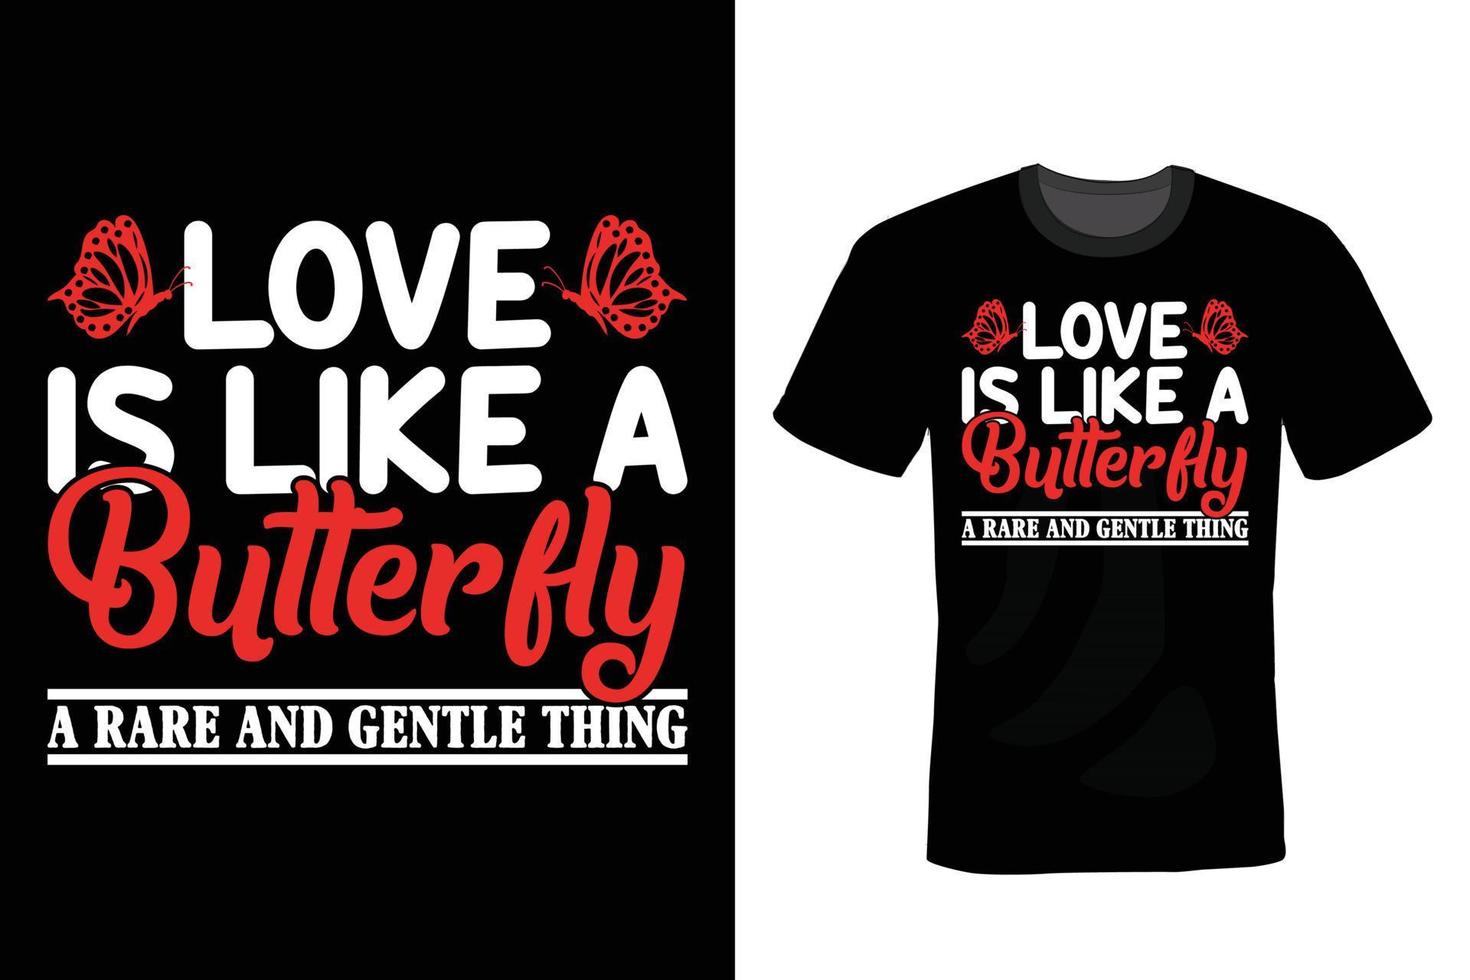 conception de t-shirt papillon, vintage, typographie vecteur